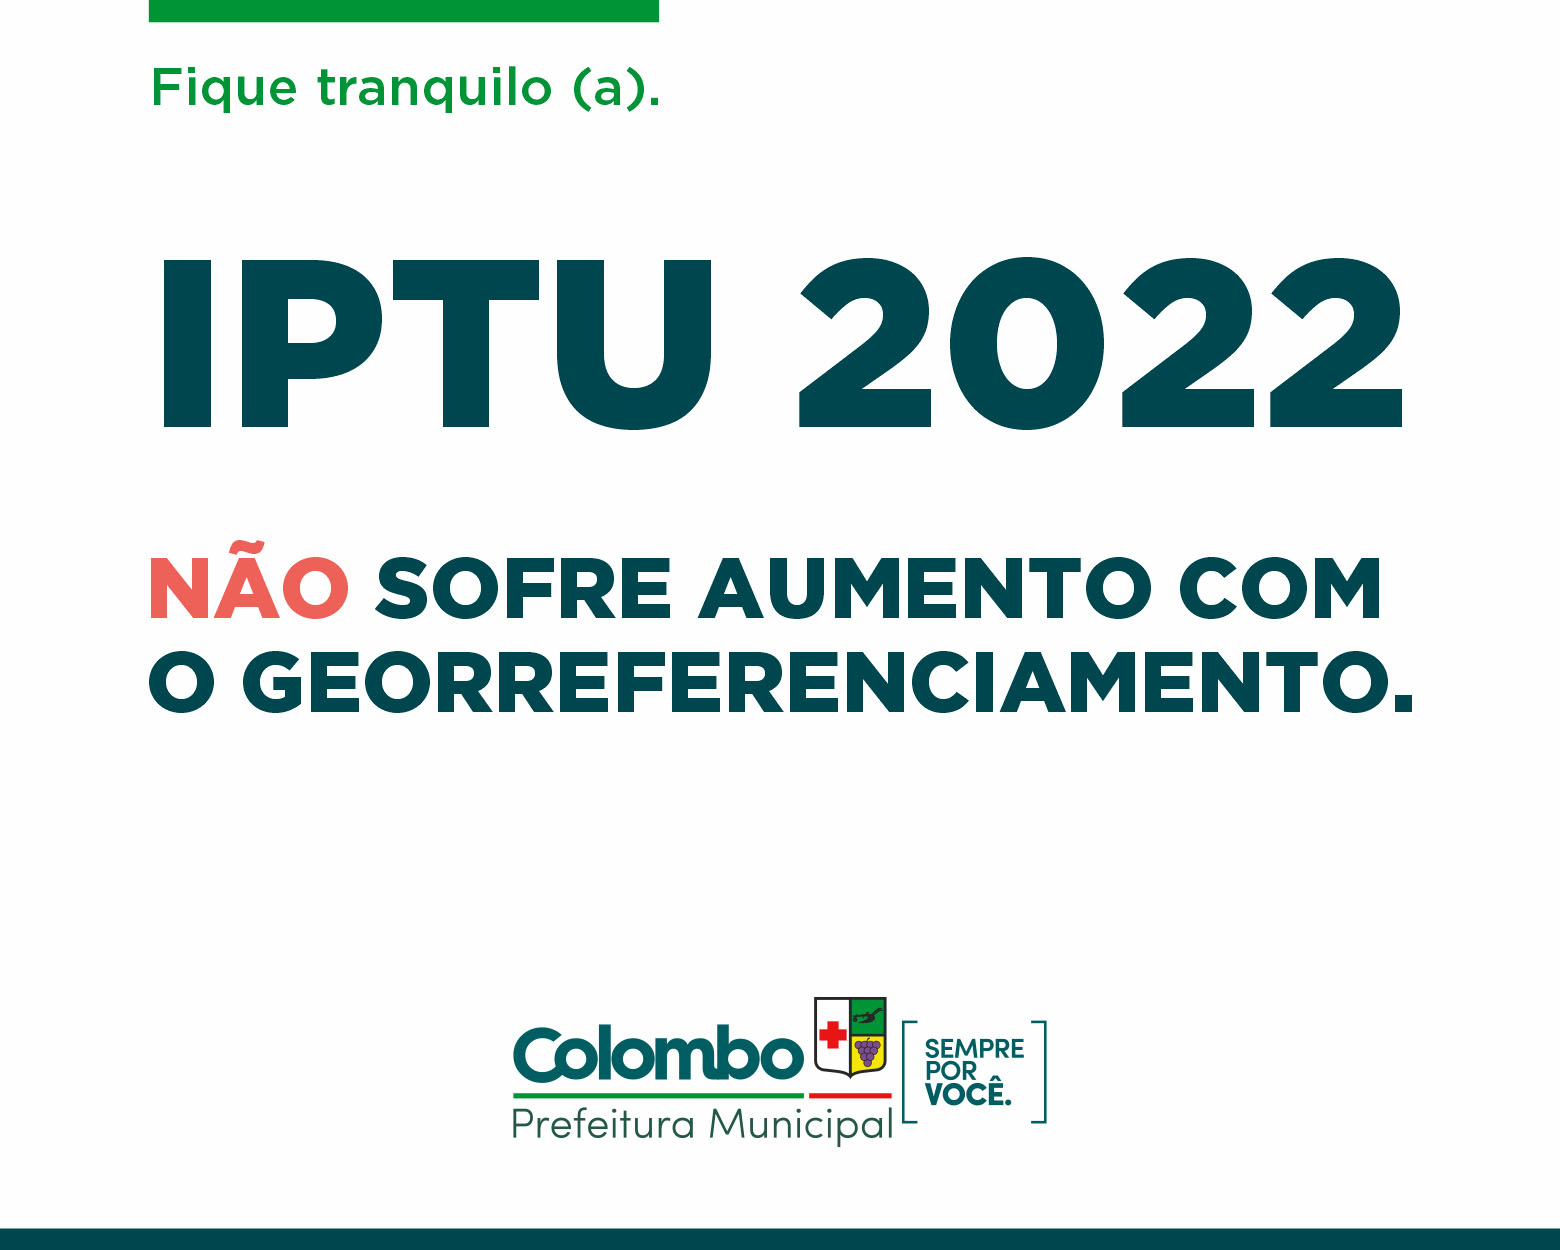 Georreferenciamento iniciado em 2018 não aumenta o valor do IPTU em 2022